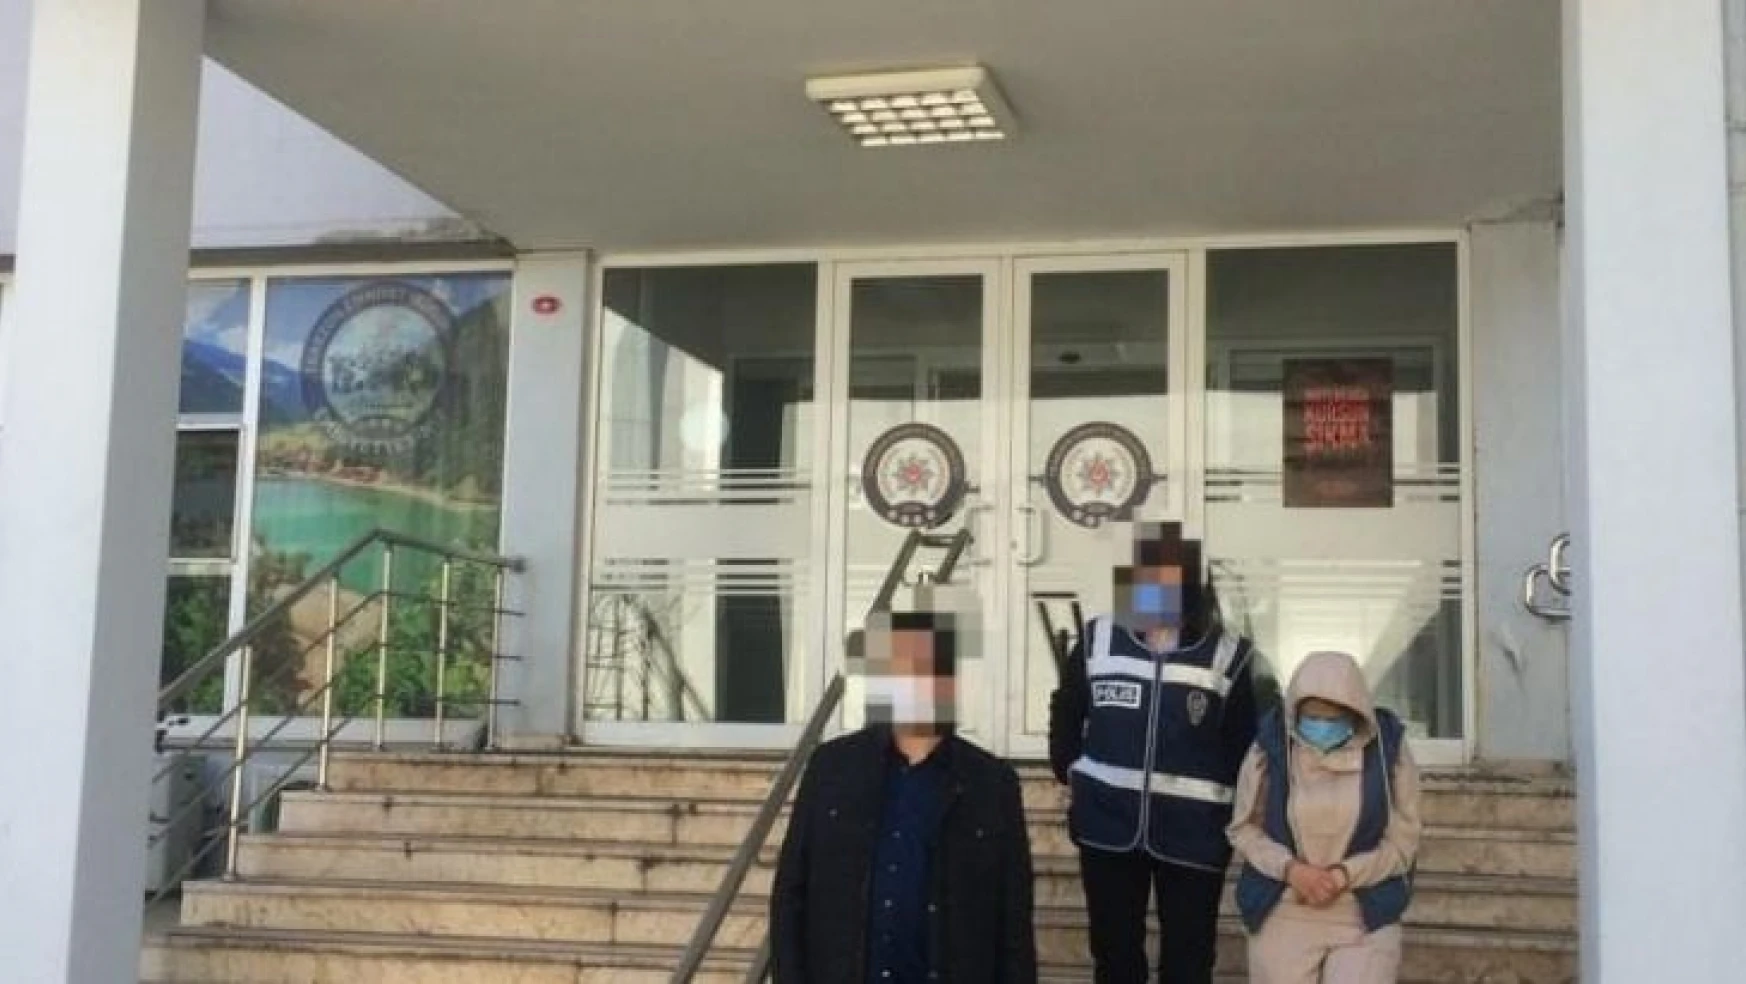 27 yabancı uyruklu kadını iş vaadiyle kandırarak getirdiği Trabzon'da fuhuş yaptırdı ama polisten kaçamadı